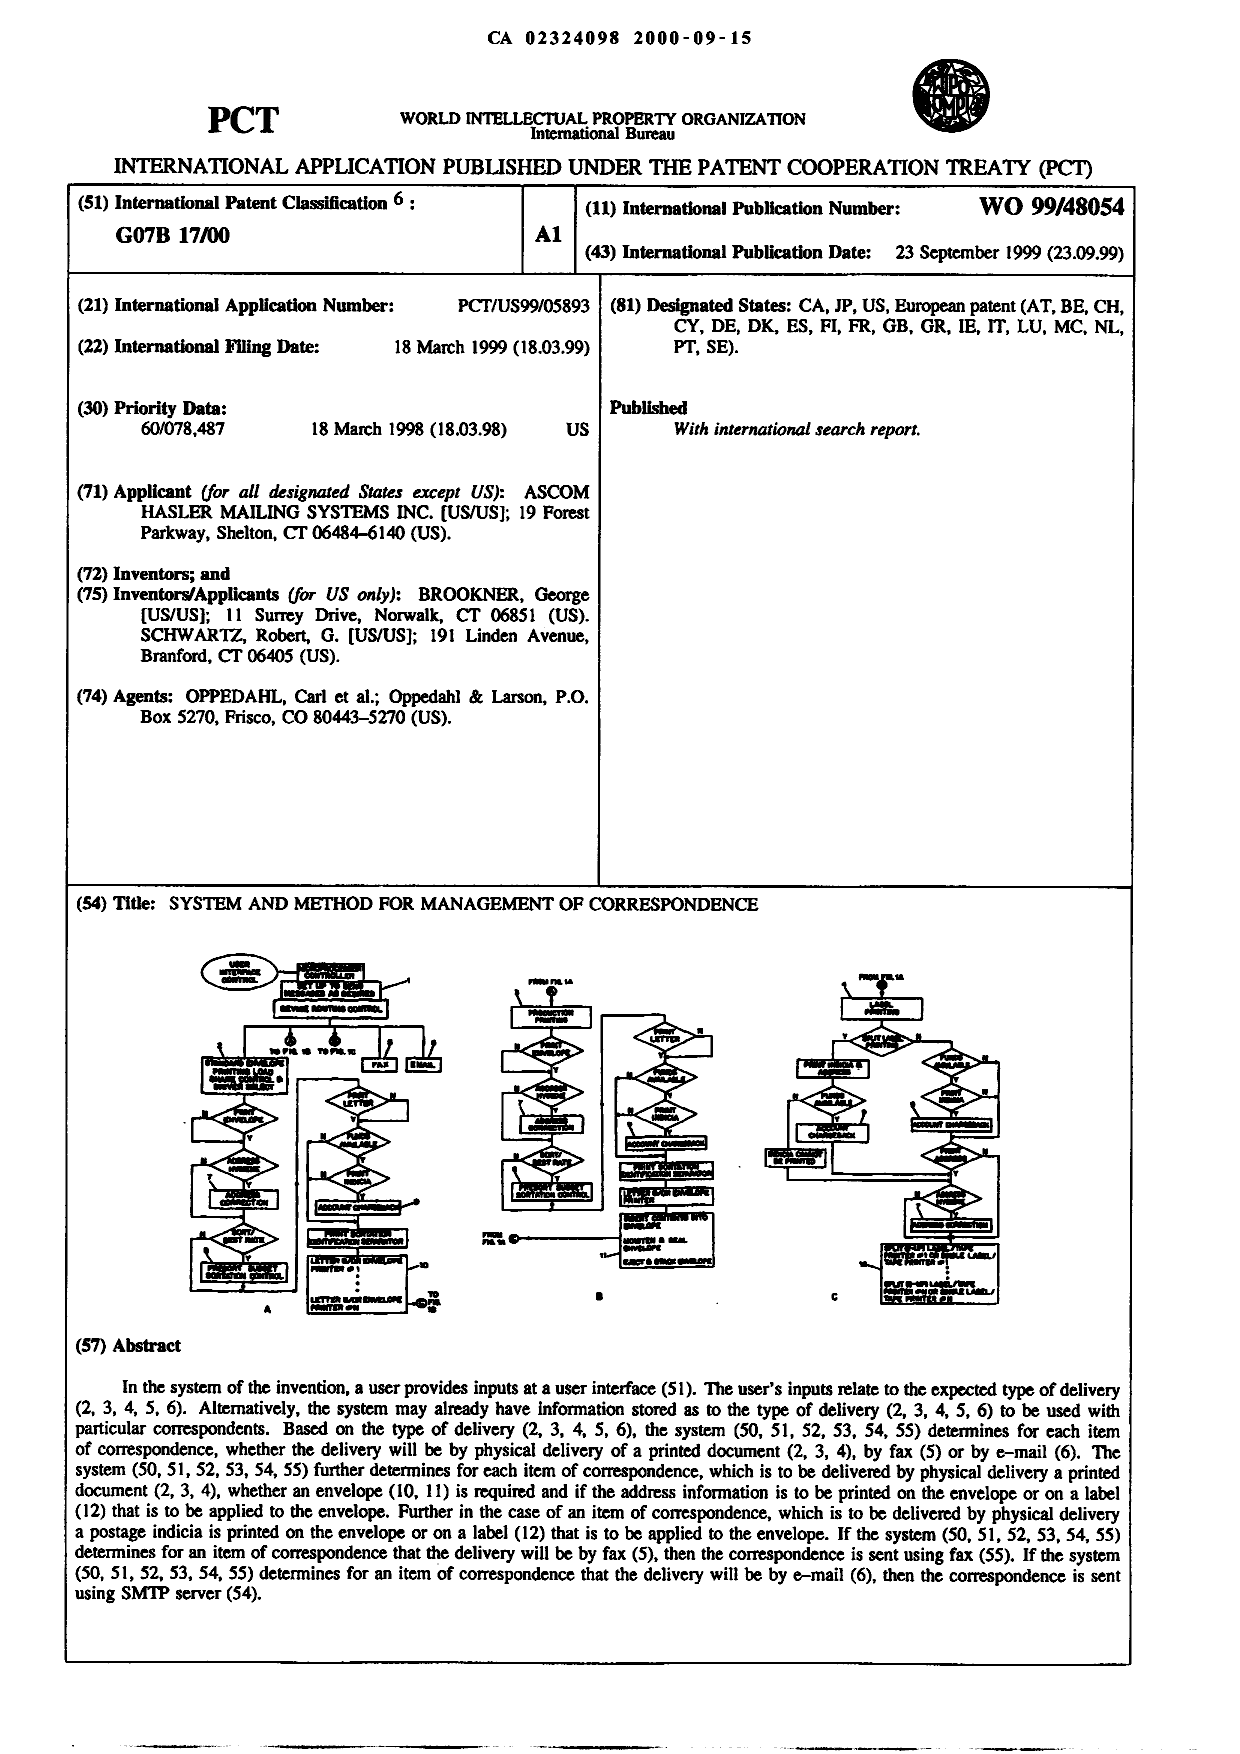 Document de brevet canadien 2324098. Abrégé 20000915. Image 1 de 1